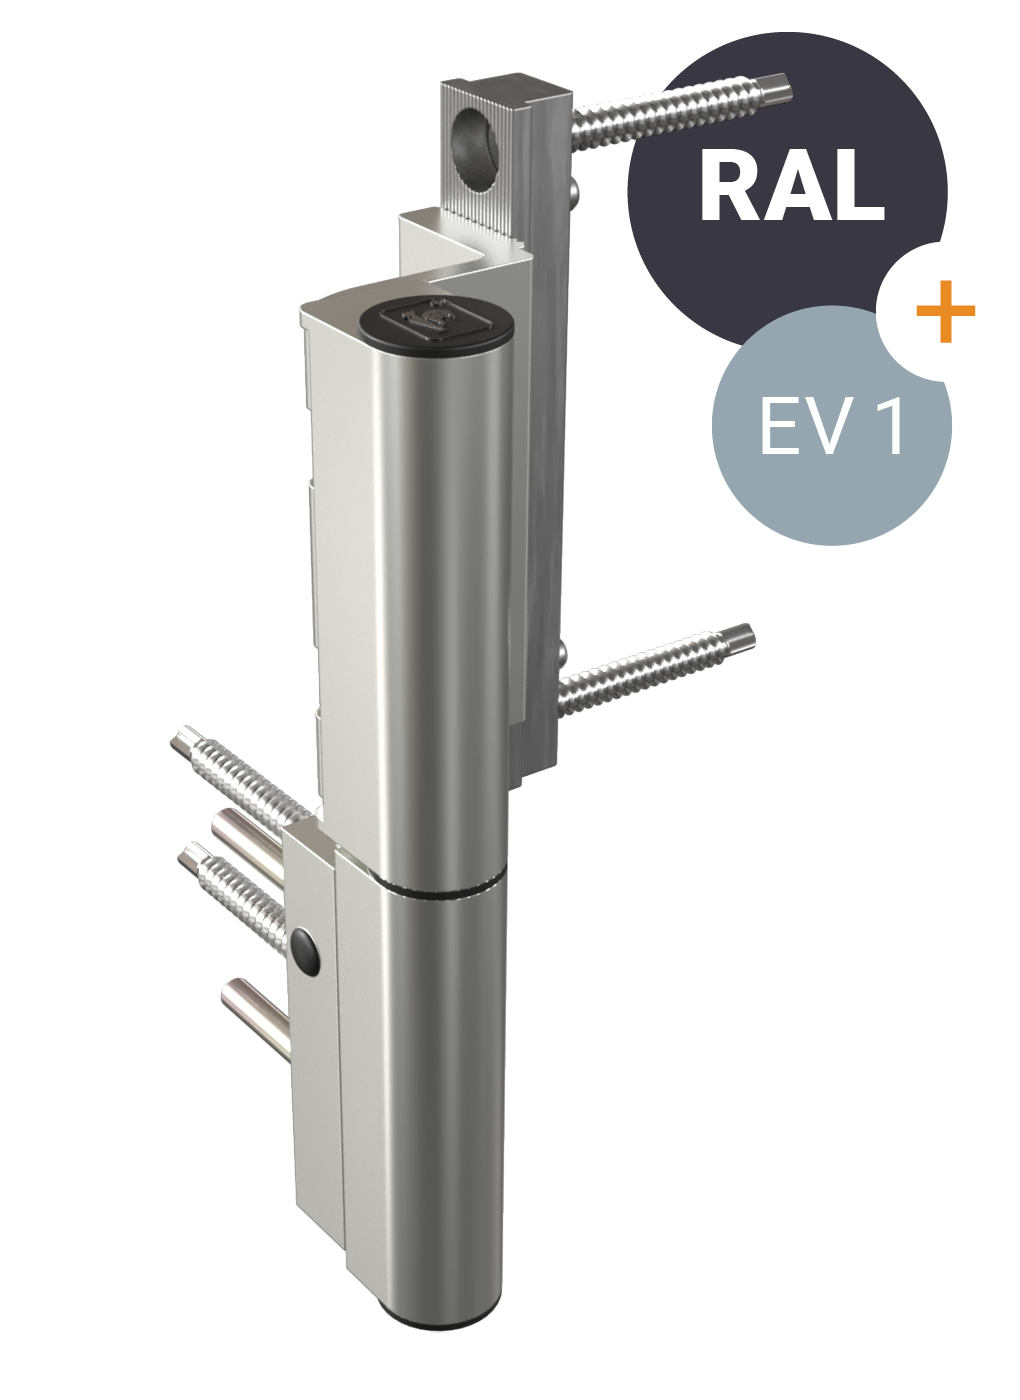 KT-RKV, 2-teilig – Türband im Rollendesign für Kunststofftüren. Erhältlich in RAL-Farben und Silber EV1.